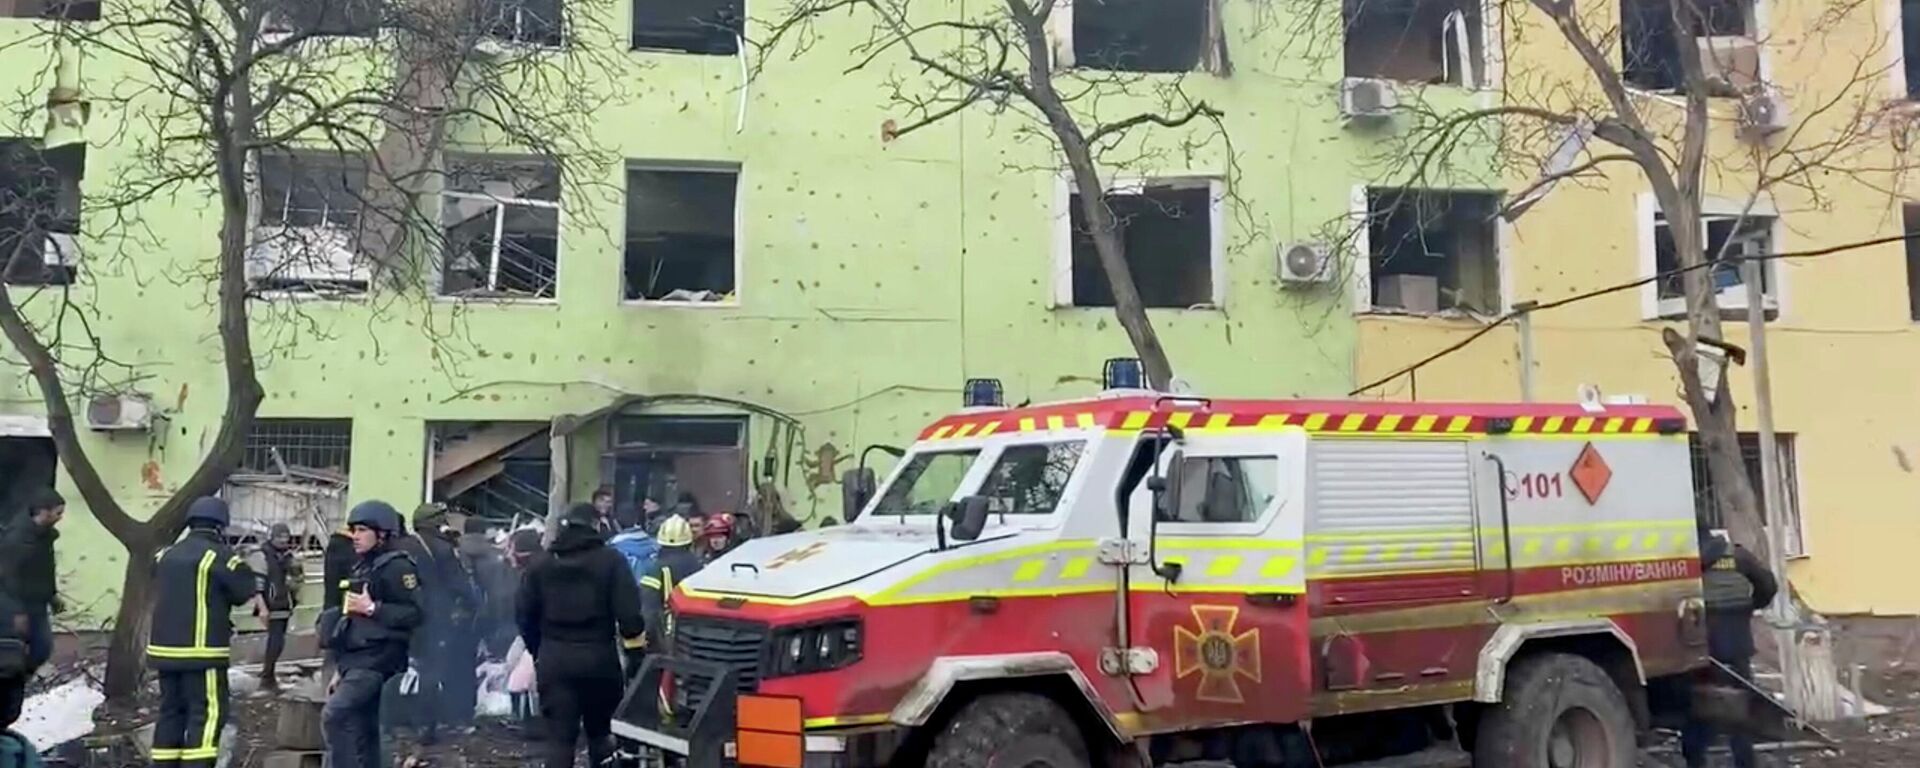 Serviços de emergência são vistos no local do hospital de maternidade de Mariupol destruído em Mariupol, Ucrânia, 9 de março de 2022 - Sputnik Brasil, 1920, 10.03.2022